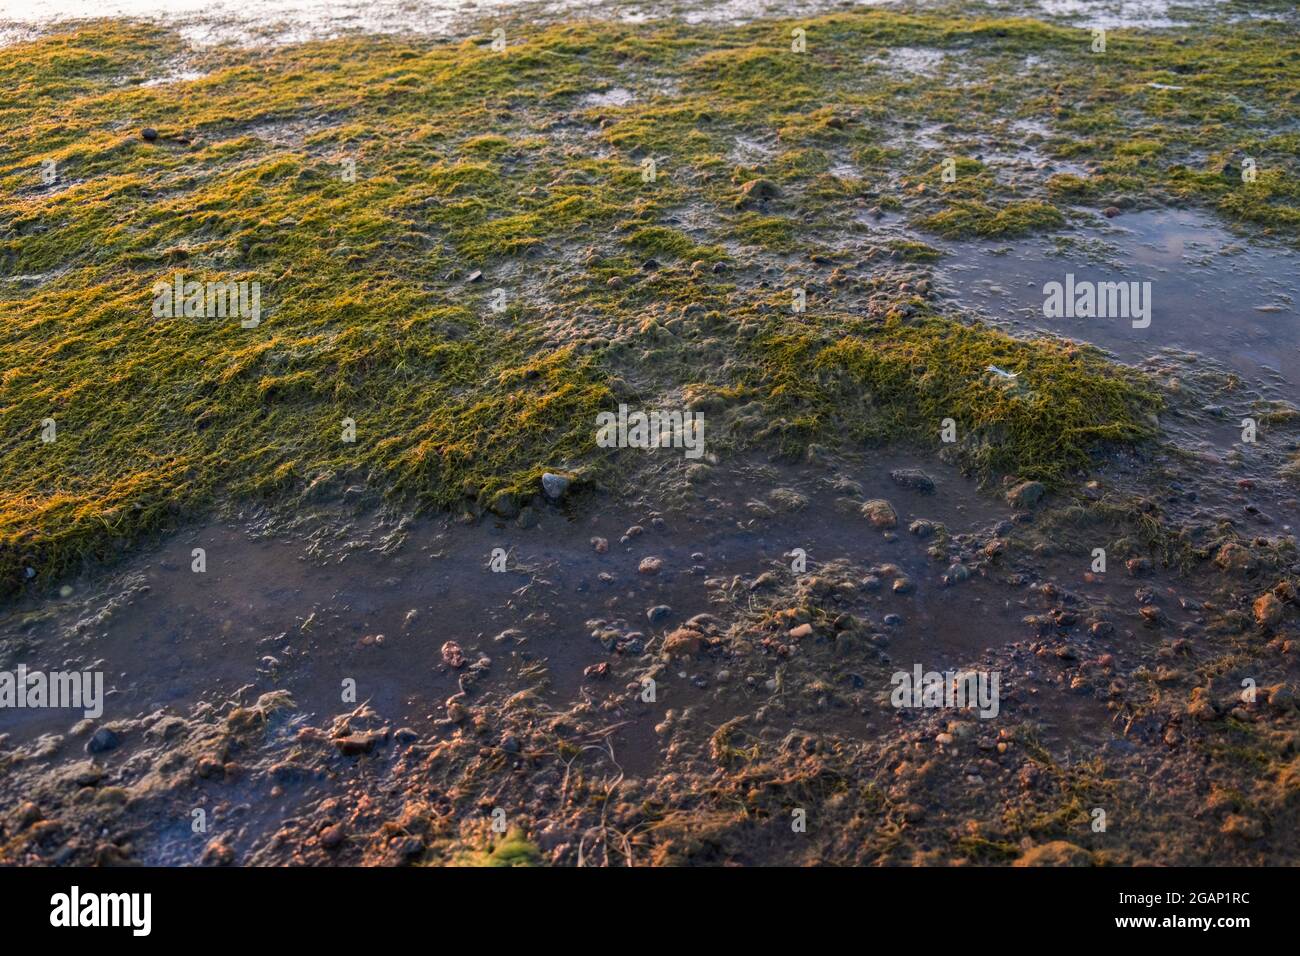 Seeufer voller blühender, stinkender Algen, die durch das heiße Sommerwetter ohne Wind verursacht werden. Sauberkeit und Qualität des Meerwassers. Stockfoto